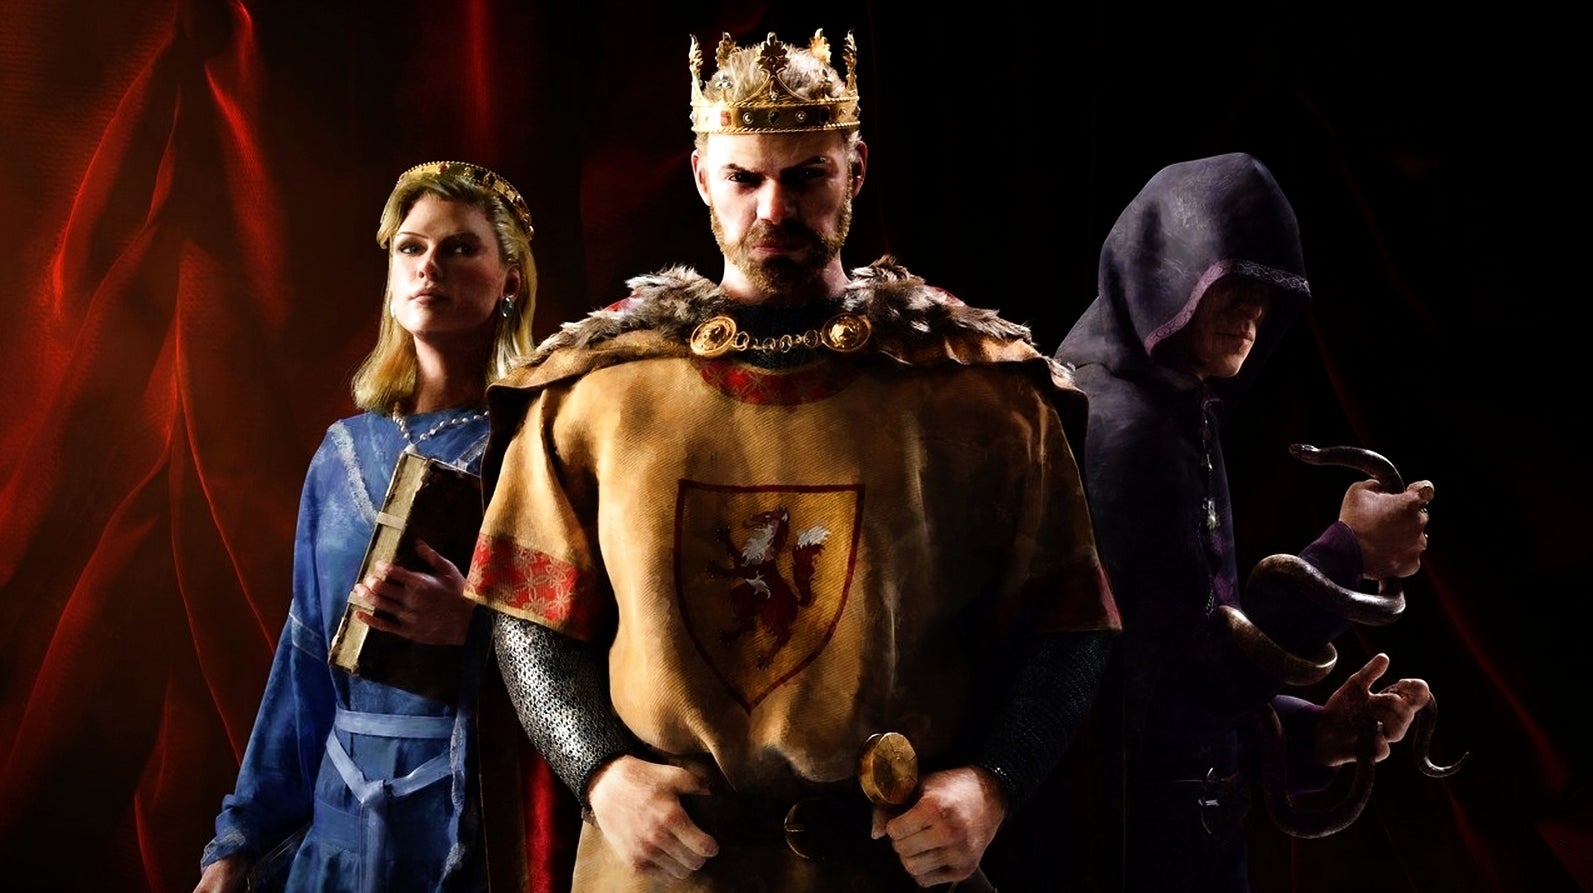 Bilder zu Crusader Kings 3 spielt ihr noch bis Sonntag kostenlos